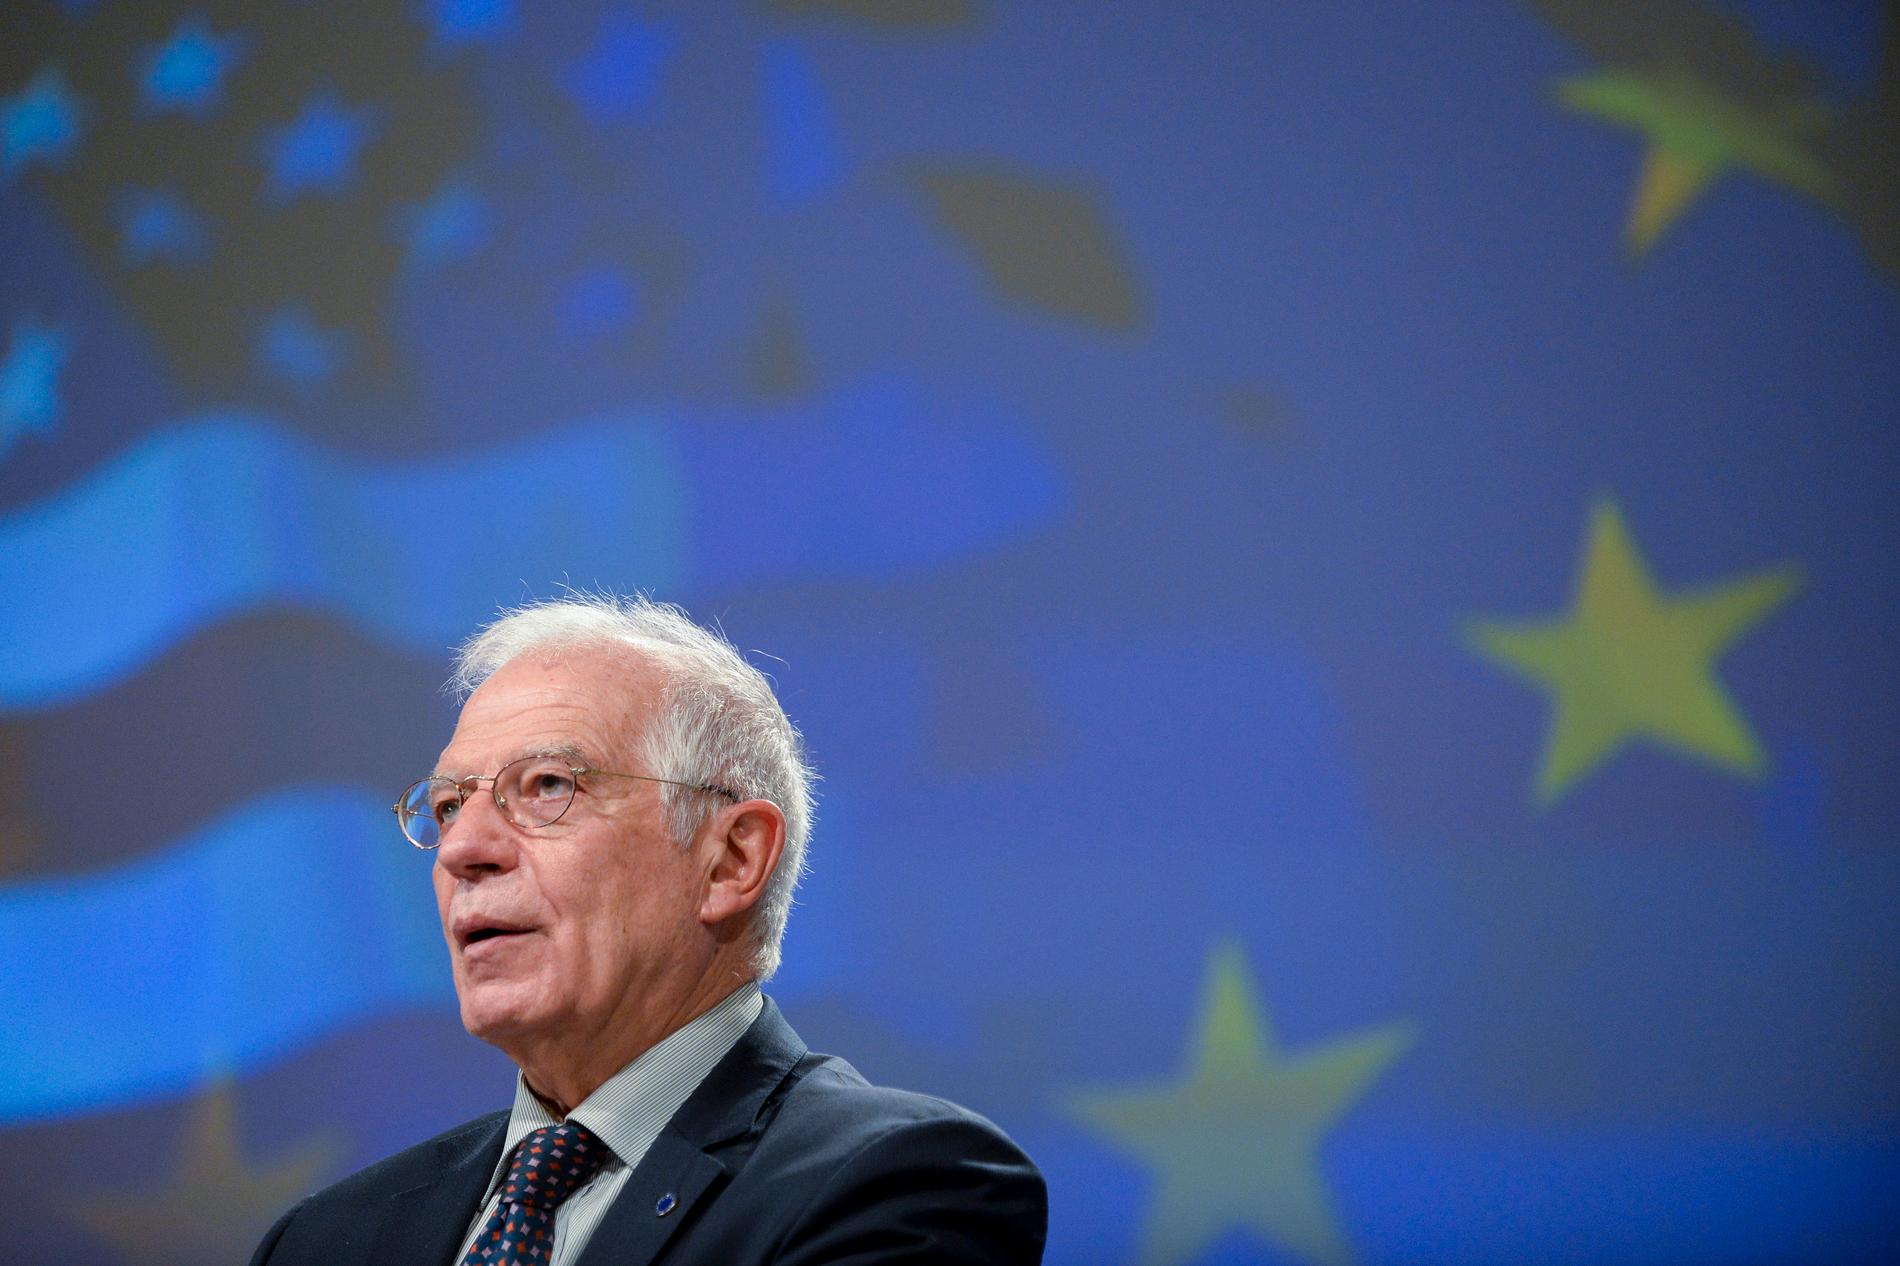 EU:s utrikeschef Josep Borrell presenterar kommissionens nya strategi för relationerna med USA.